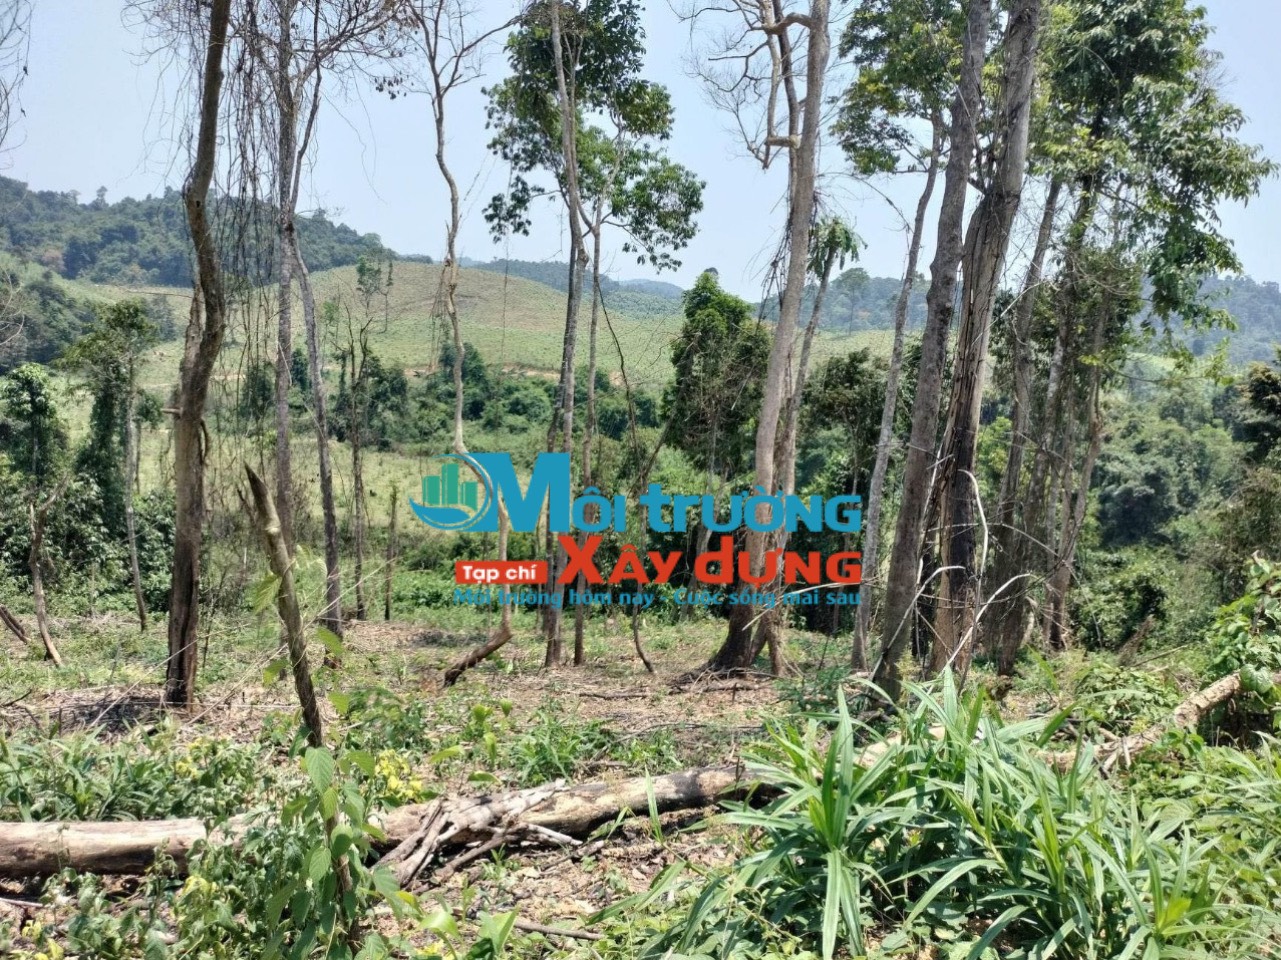 Tinh vi hình thức phá, lấn chiếm đất rừng tự nhiên ở huyện Hương Khê – Hà Tĩnh